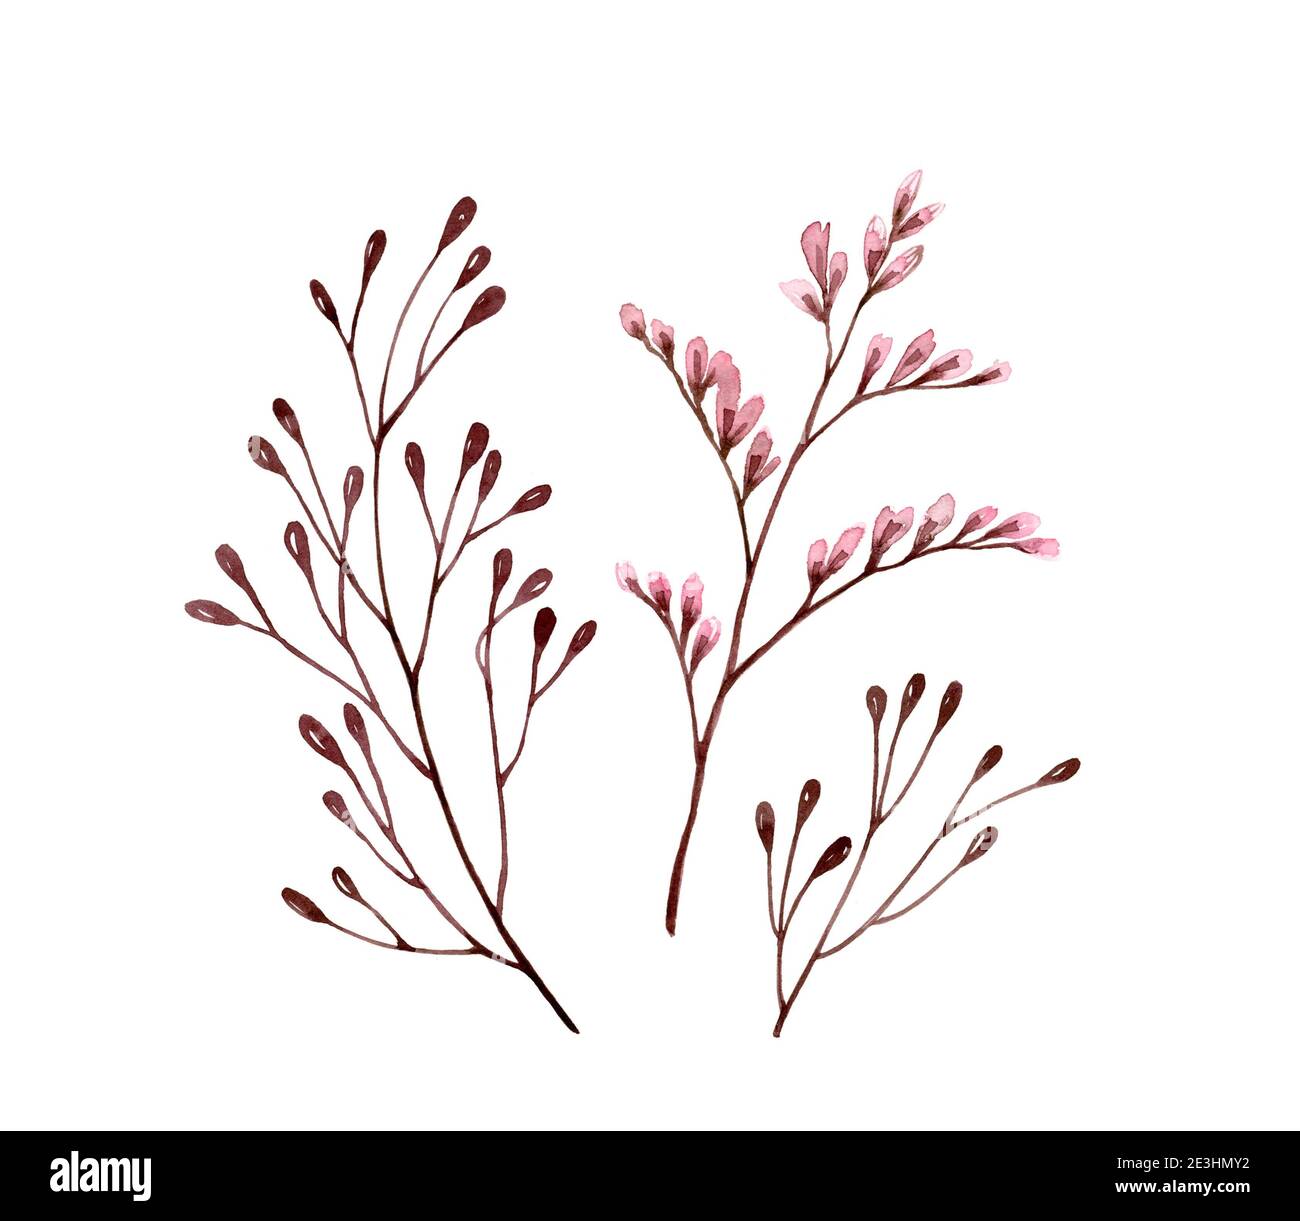 Äste mit Aquarellfarben. Set von Blumen mit kleinen rosa Blüten. Bouquet Element isoliert auf weiß. Handbemalte Vintage-Kunstwerke. Botanische Abbildung Stockfoto